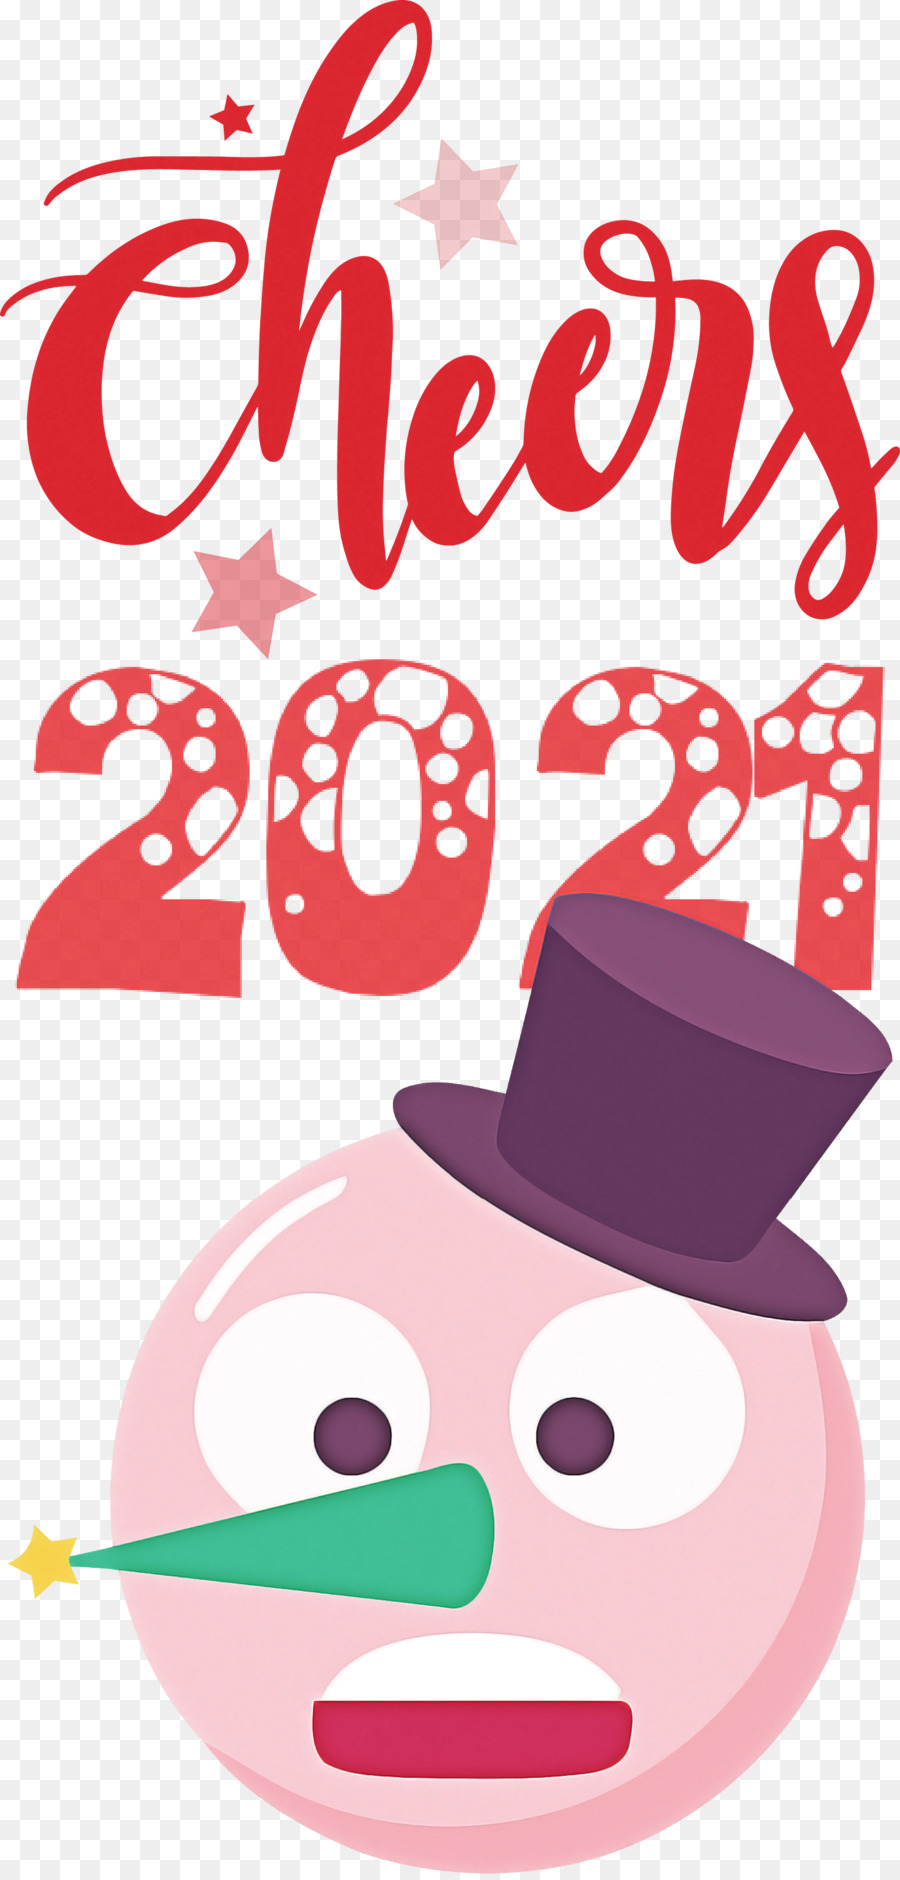 Chúc mừng Năm mới 2021 Chúc mừng năm mới 2021 - 